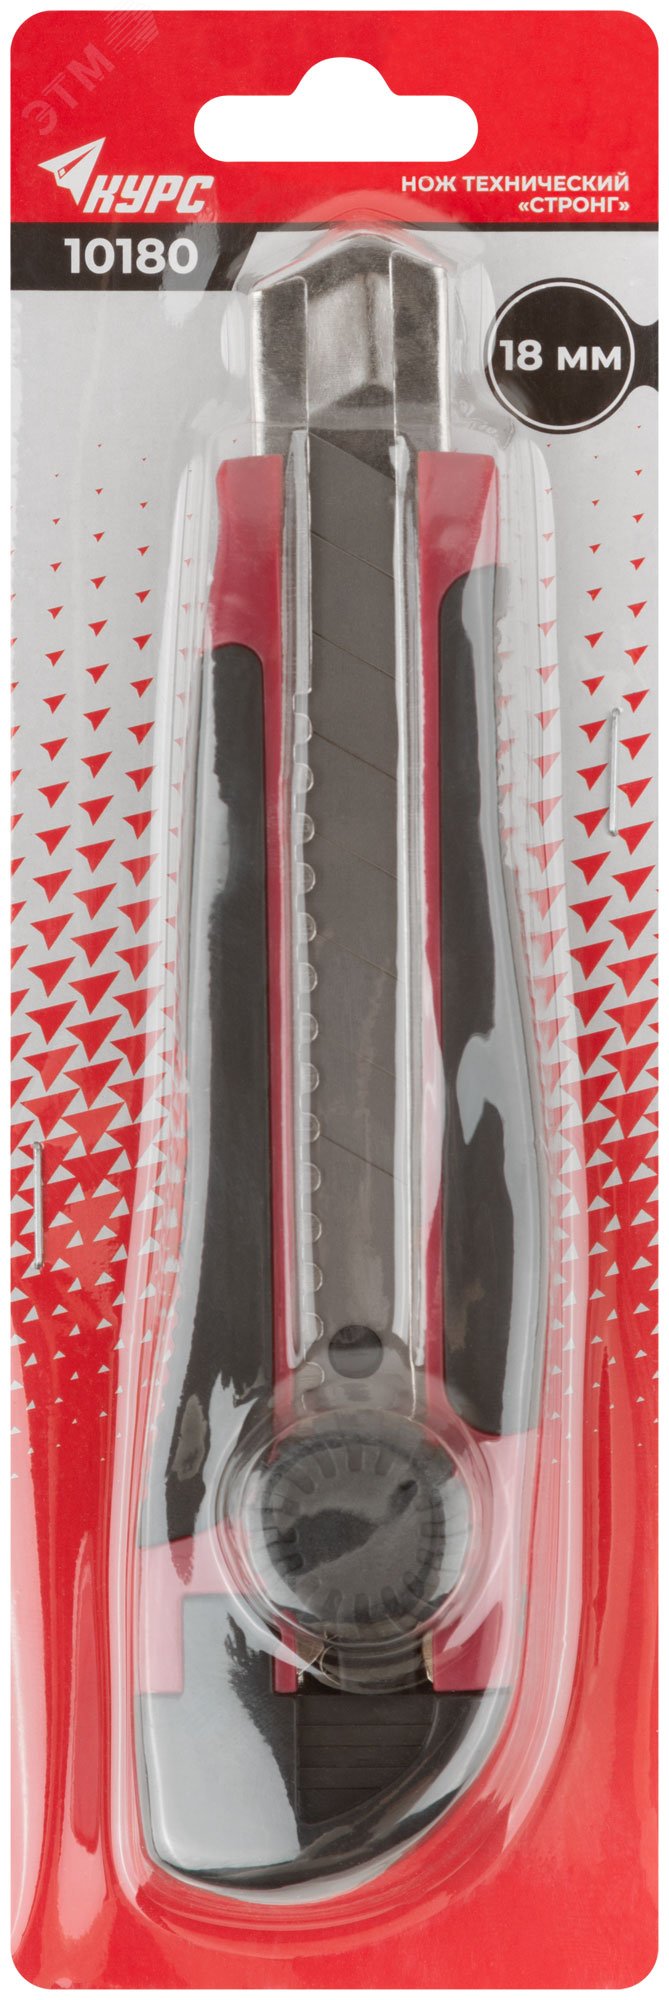 Нож технический ''Стронг'' 18 мм усиленный, прорезиненный, вращ.прижим 10180 КУРС - превью 3